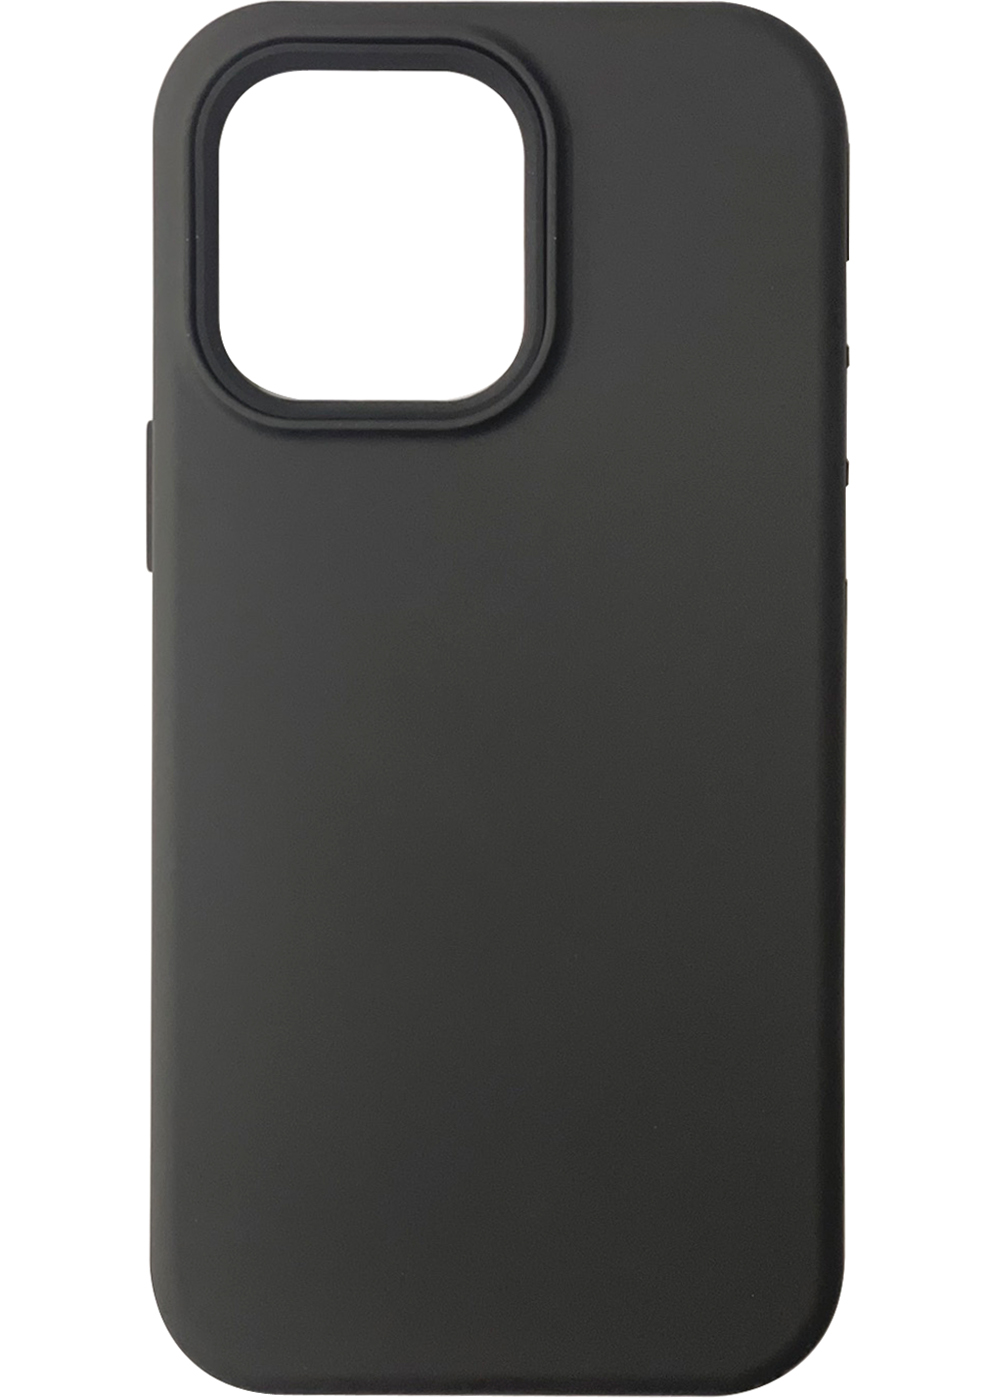 iP14Plus 3in1 Case Black